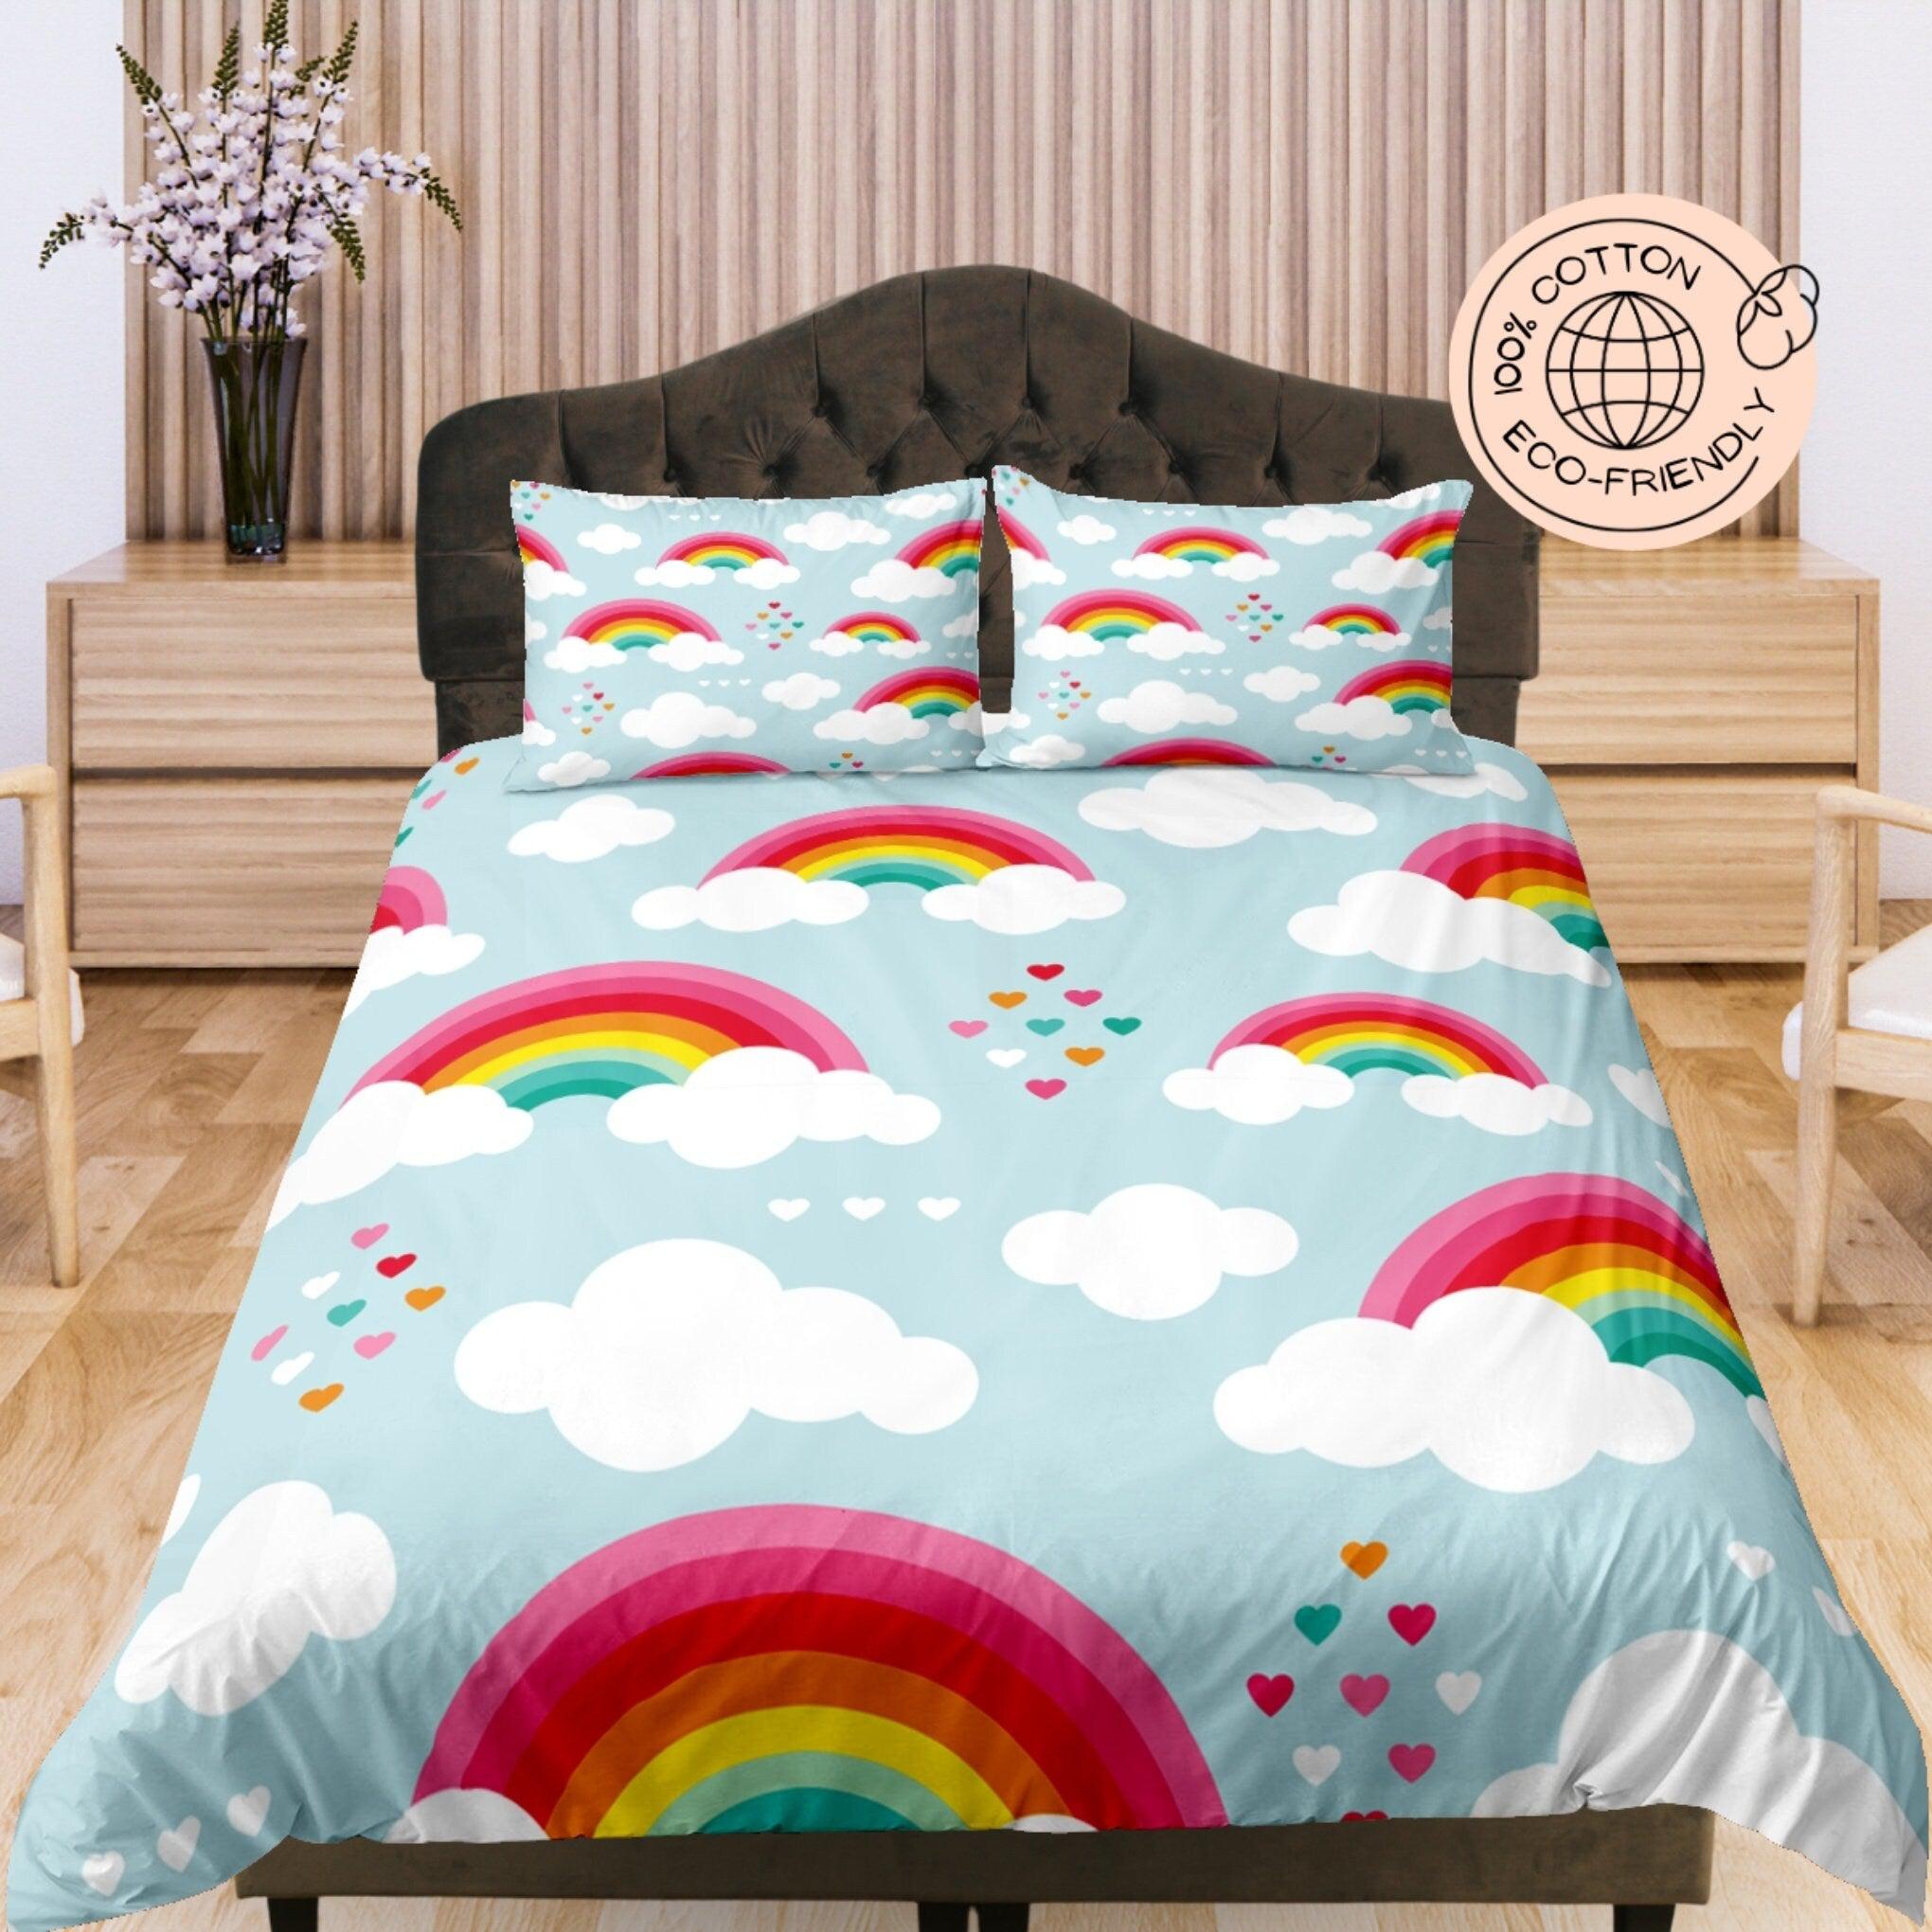 daintyduvet Rainbow Cotton Duvet Cover Set for Kids, Light Blue Toddler Bedding, Baby Zipper Bedding, Colorful Nursery Bedding, Crib Bedding Unisex